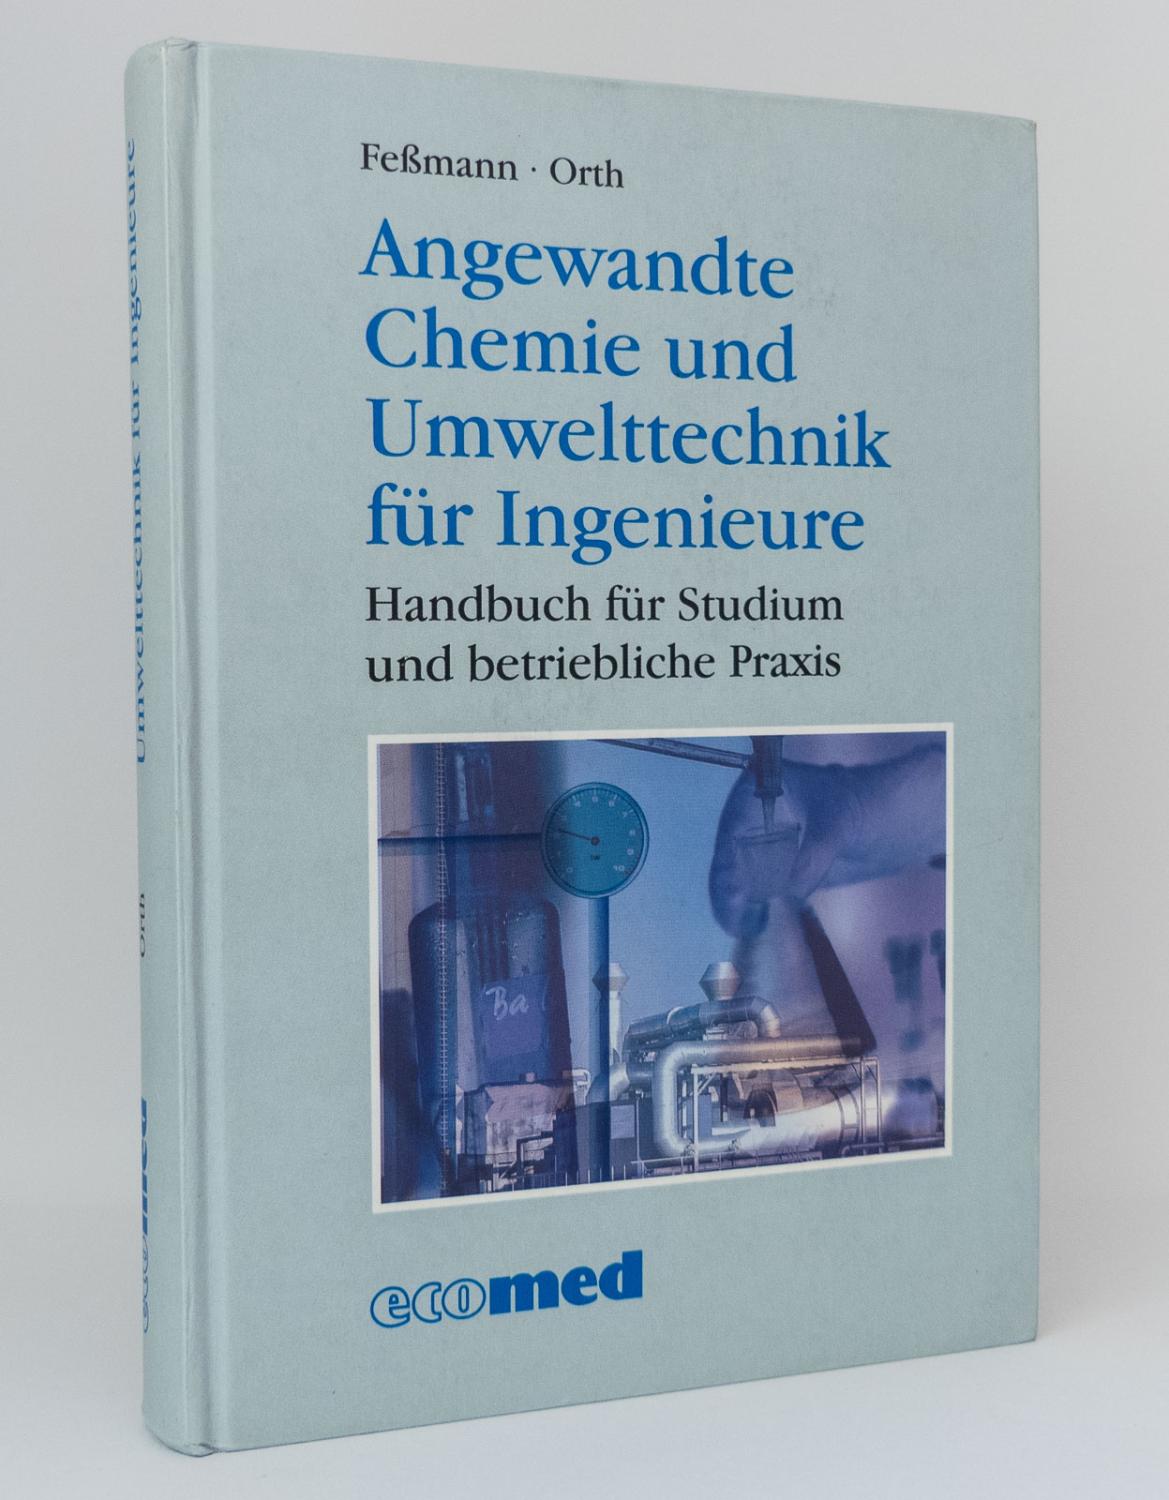 Angewandte Chemie und Umwelttechnik für Ingenieure : Handbuch für Studium und betriebliche Praxis - Feßmann, Jürgen; Orth, Helmut